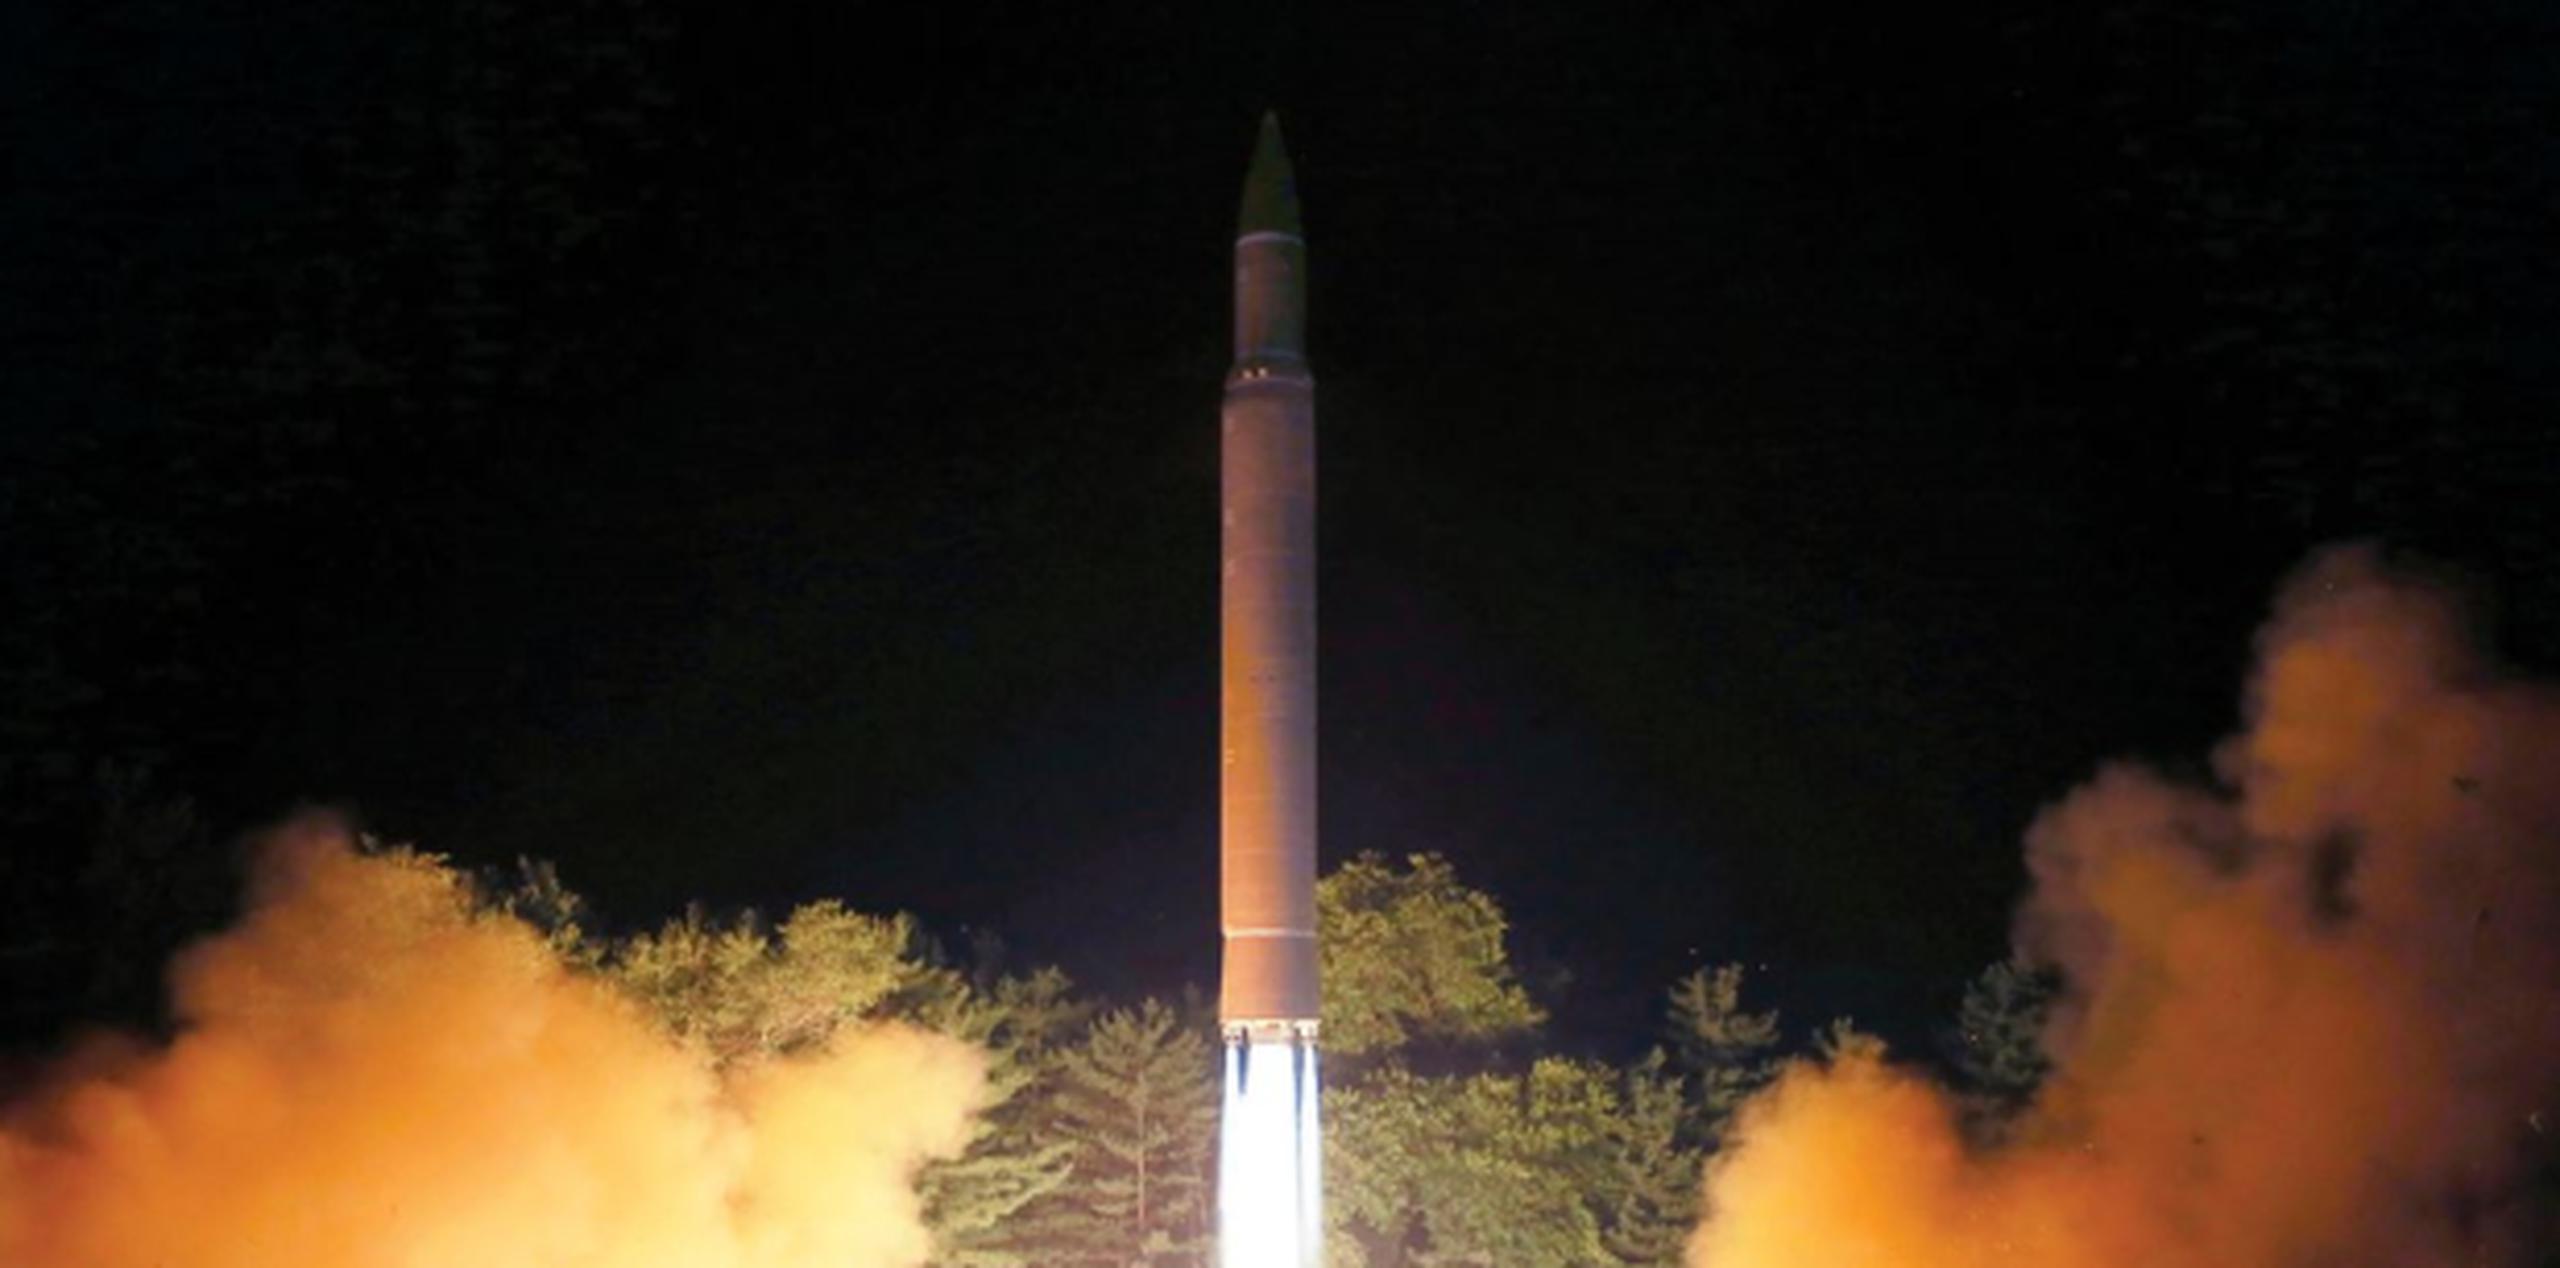 Expertos dijeron que aunque los misiles de Pyongyang sean lanzados a manera de prueba, Washington estaría obligado a interceptarlos, lo cual podría generar una escalada mayor de tensión. (AP)